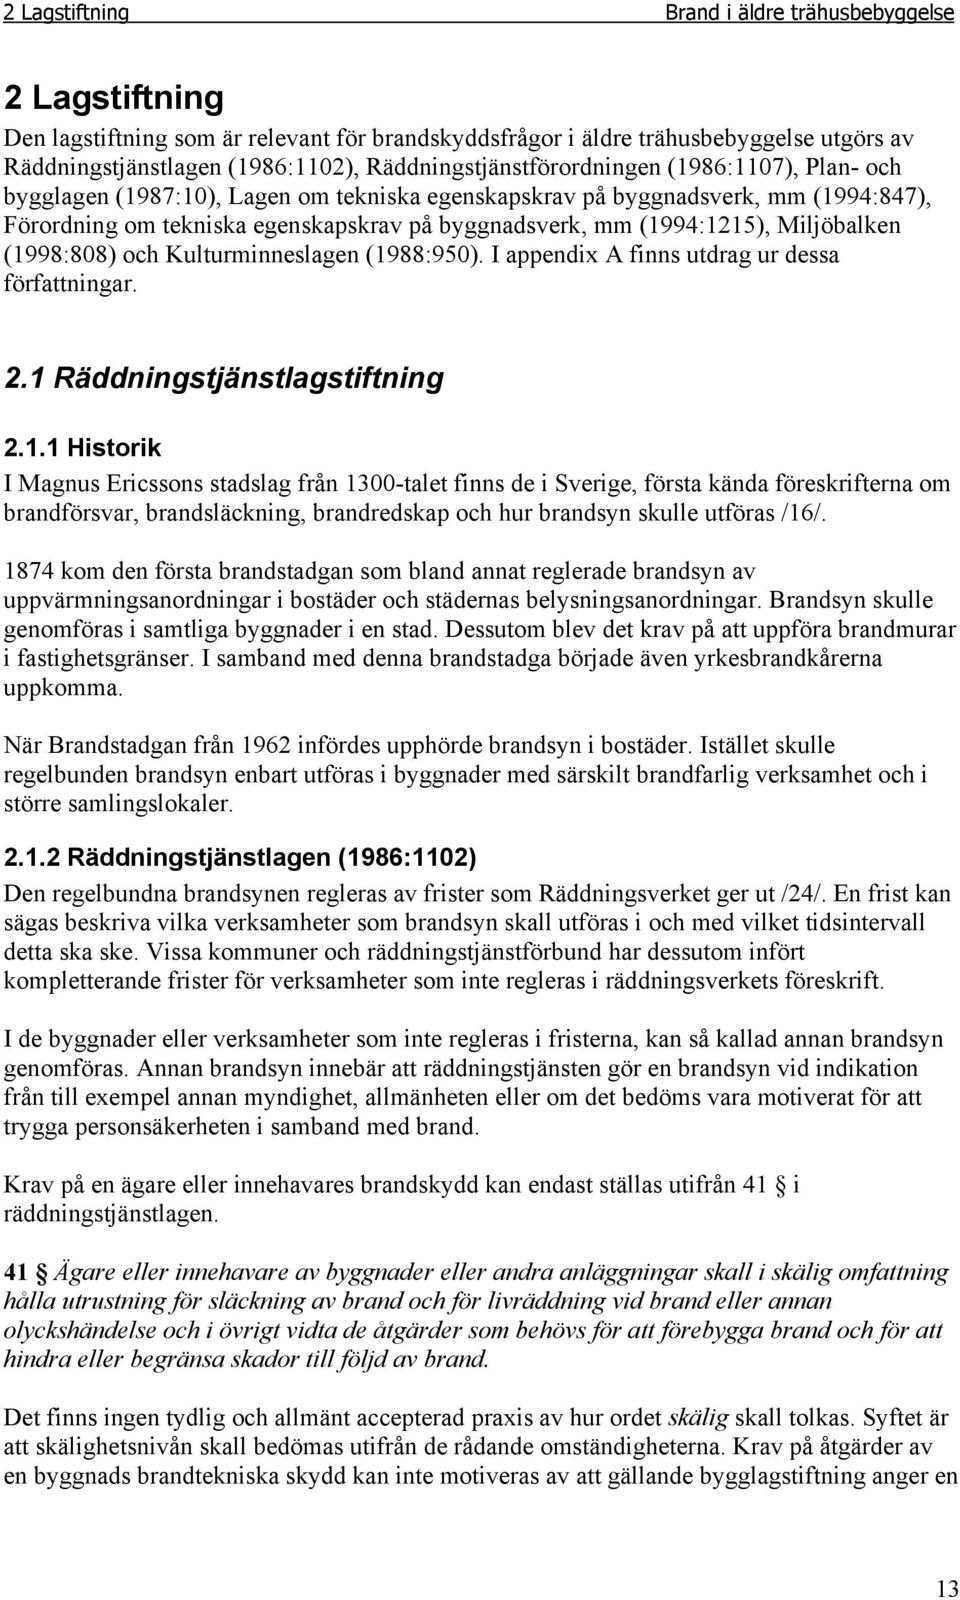 (1994:1215), Miljöbalken (1998:808) och Kulturminneslagen (1988:950). I appendix A finns utdrag ur dessa författningar. 2.1 Räddningstjänstlagstiftning 2.1.1 Historik I Magnus Ericssons stadslag från 1300-talet finns de i Sverige, första kända föreskrifterna om brandförsvar, brandsläckning, brandredskap och hur brandsyn skulle utföras /16/.